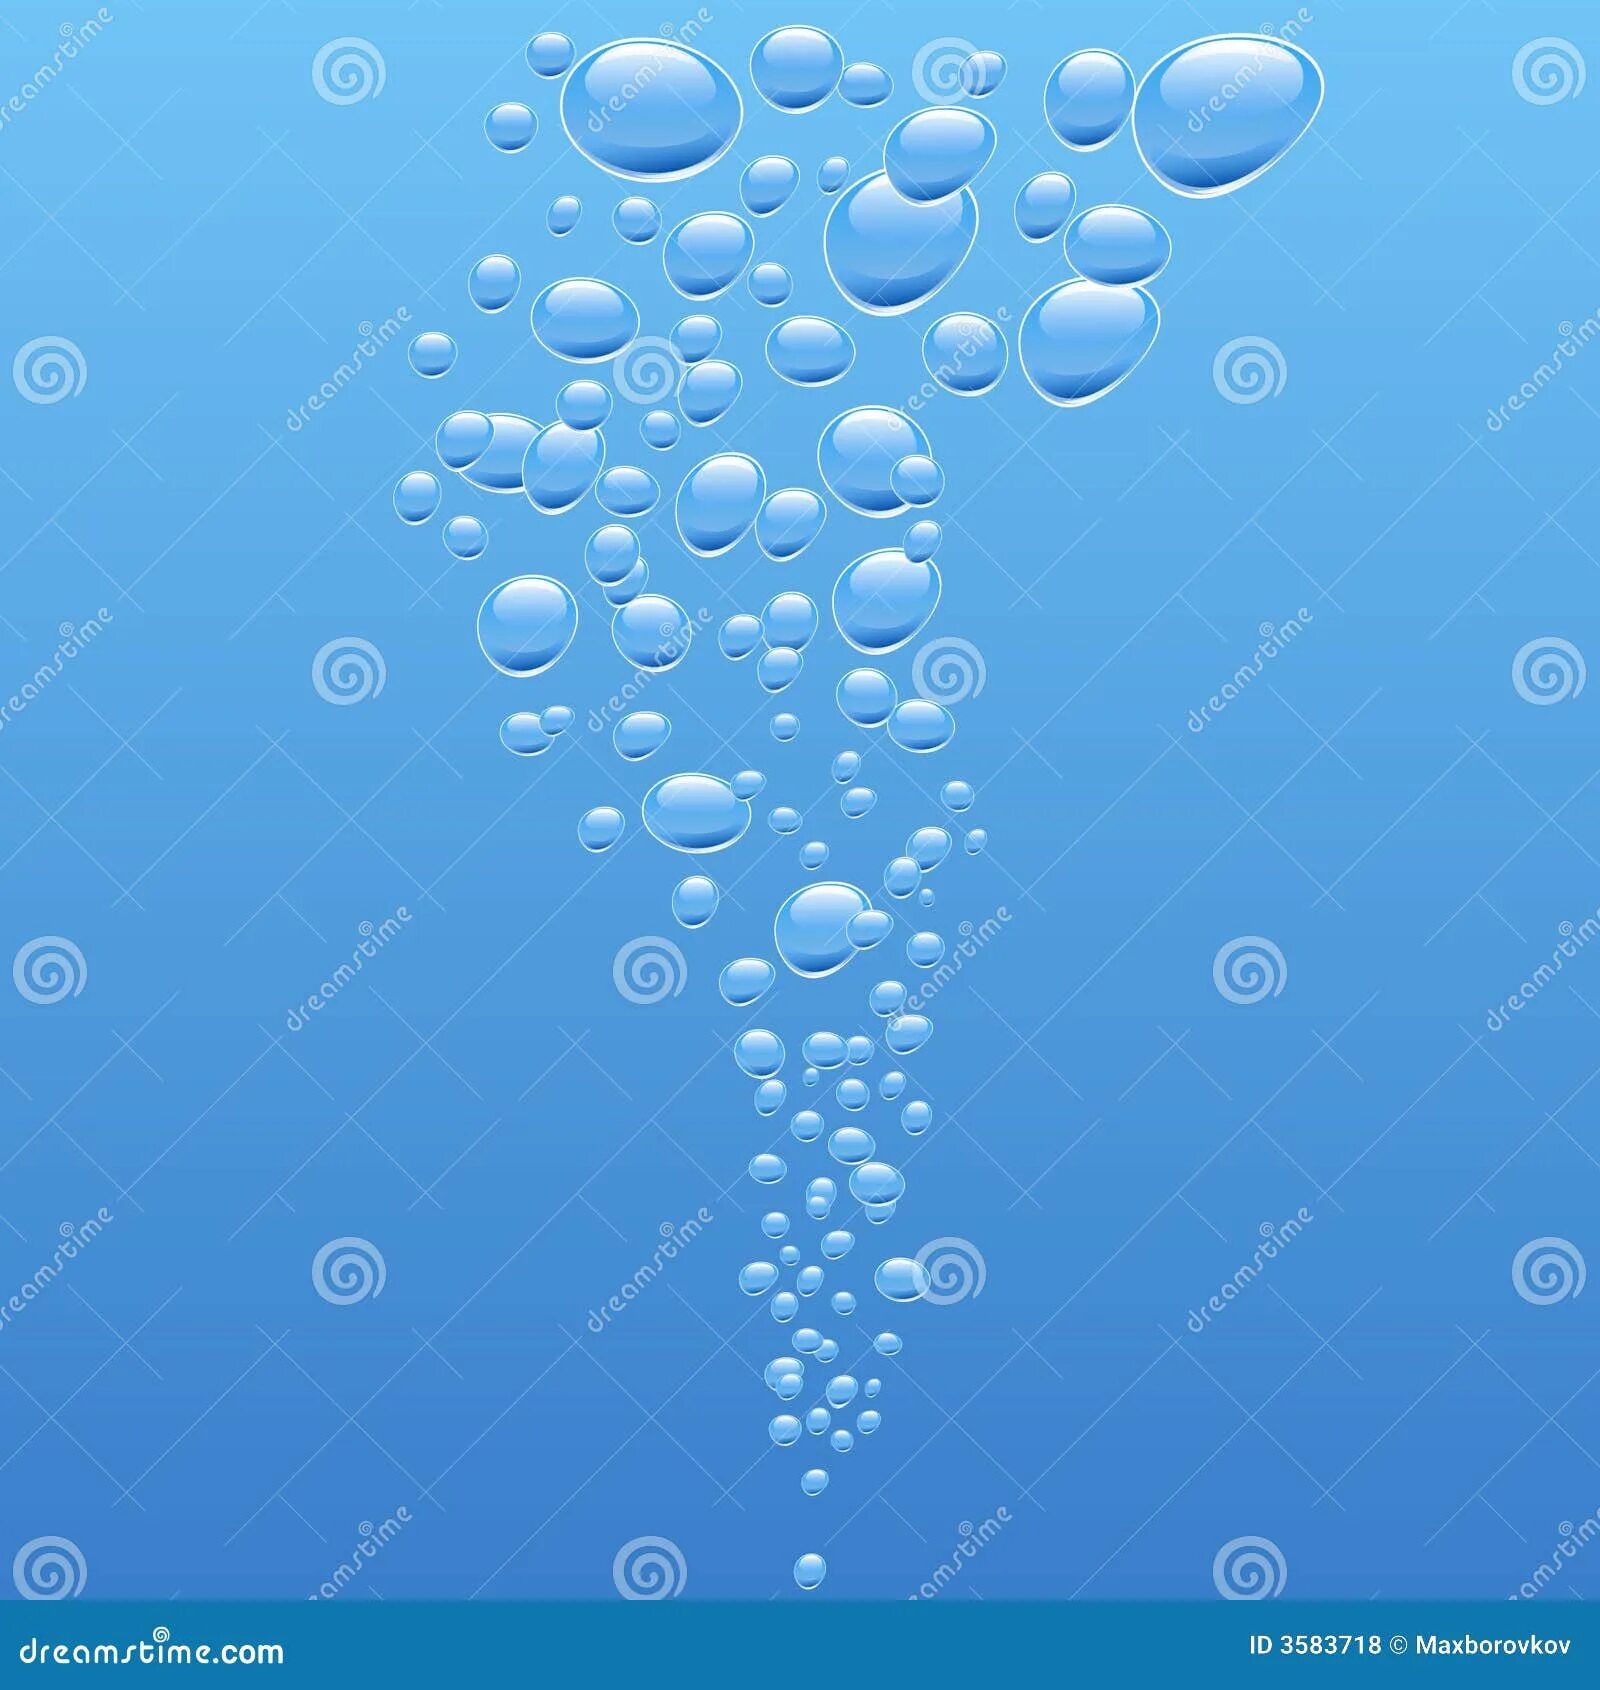 Пузырьки воздуха. Пузырьки в воде. Пузырьки воздуха в воздухе. Пузыри воздуха в воде.